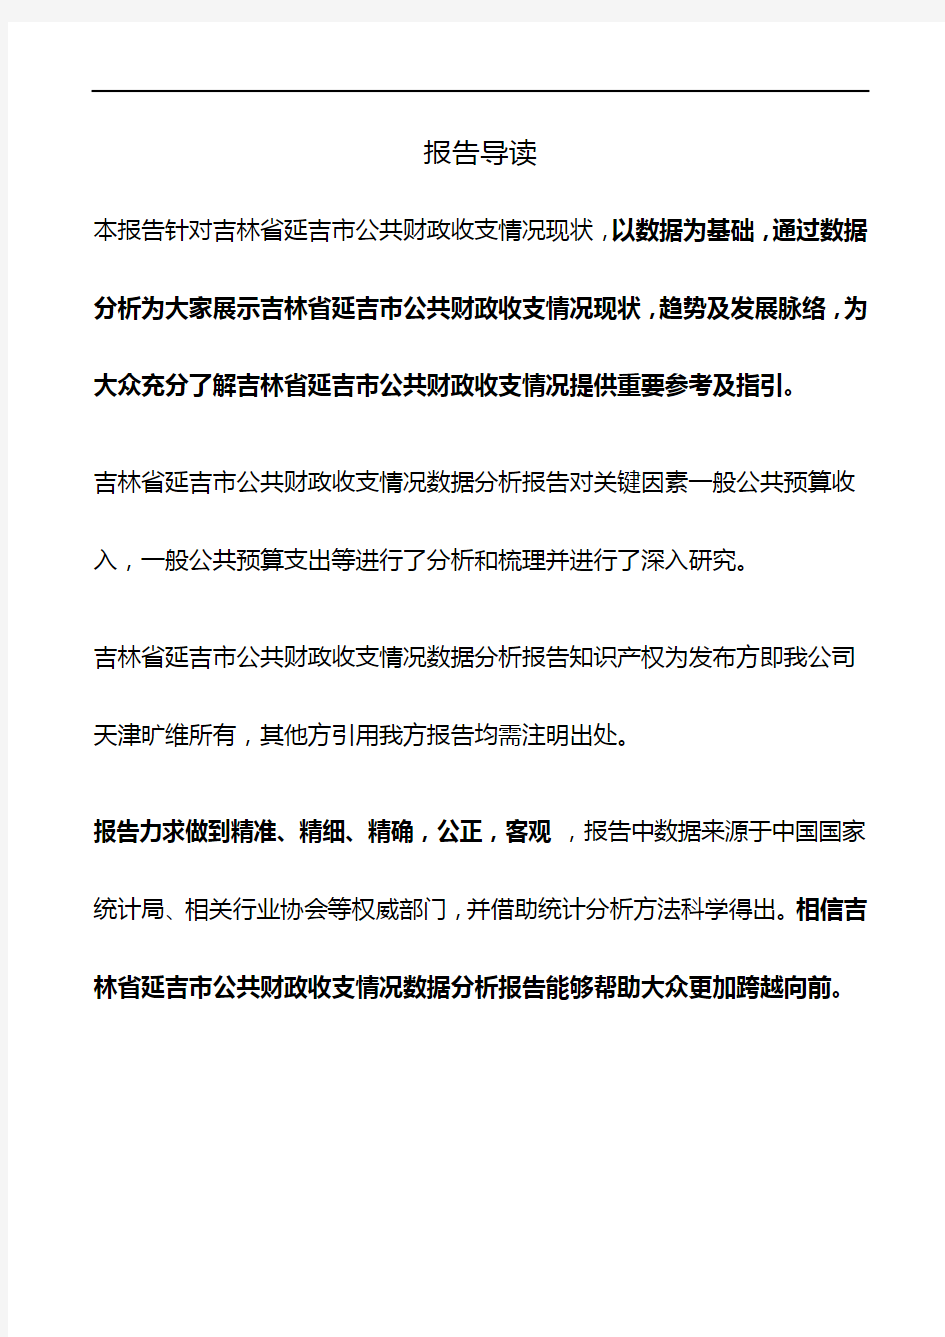 吉林省延吉市公共财政收支情况3年数据分析报告2019版